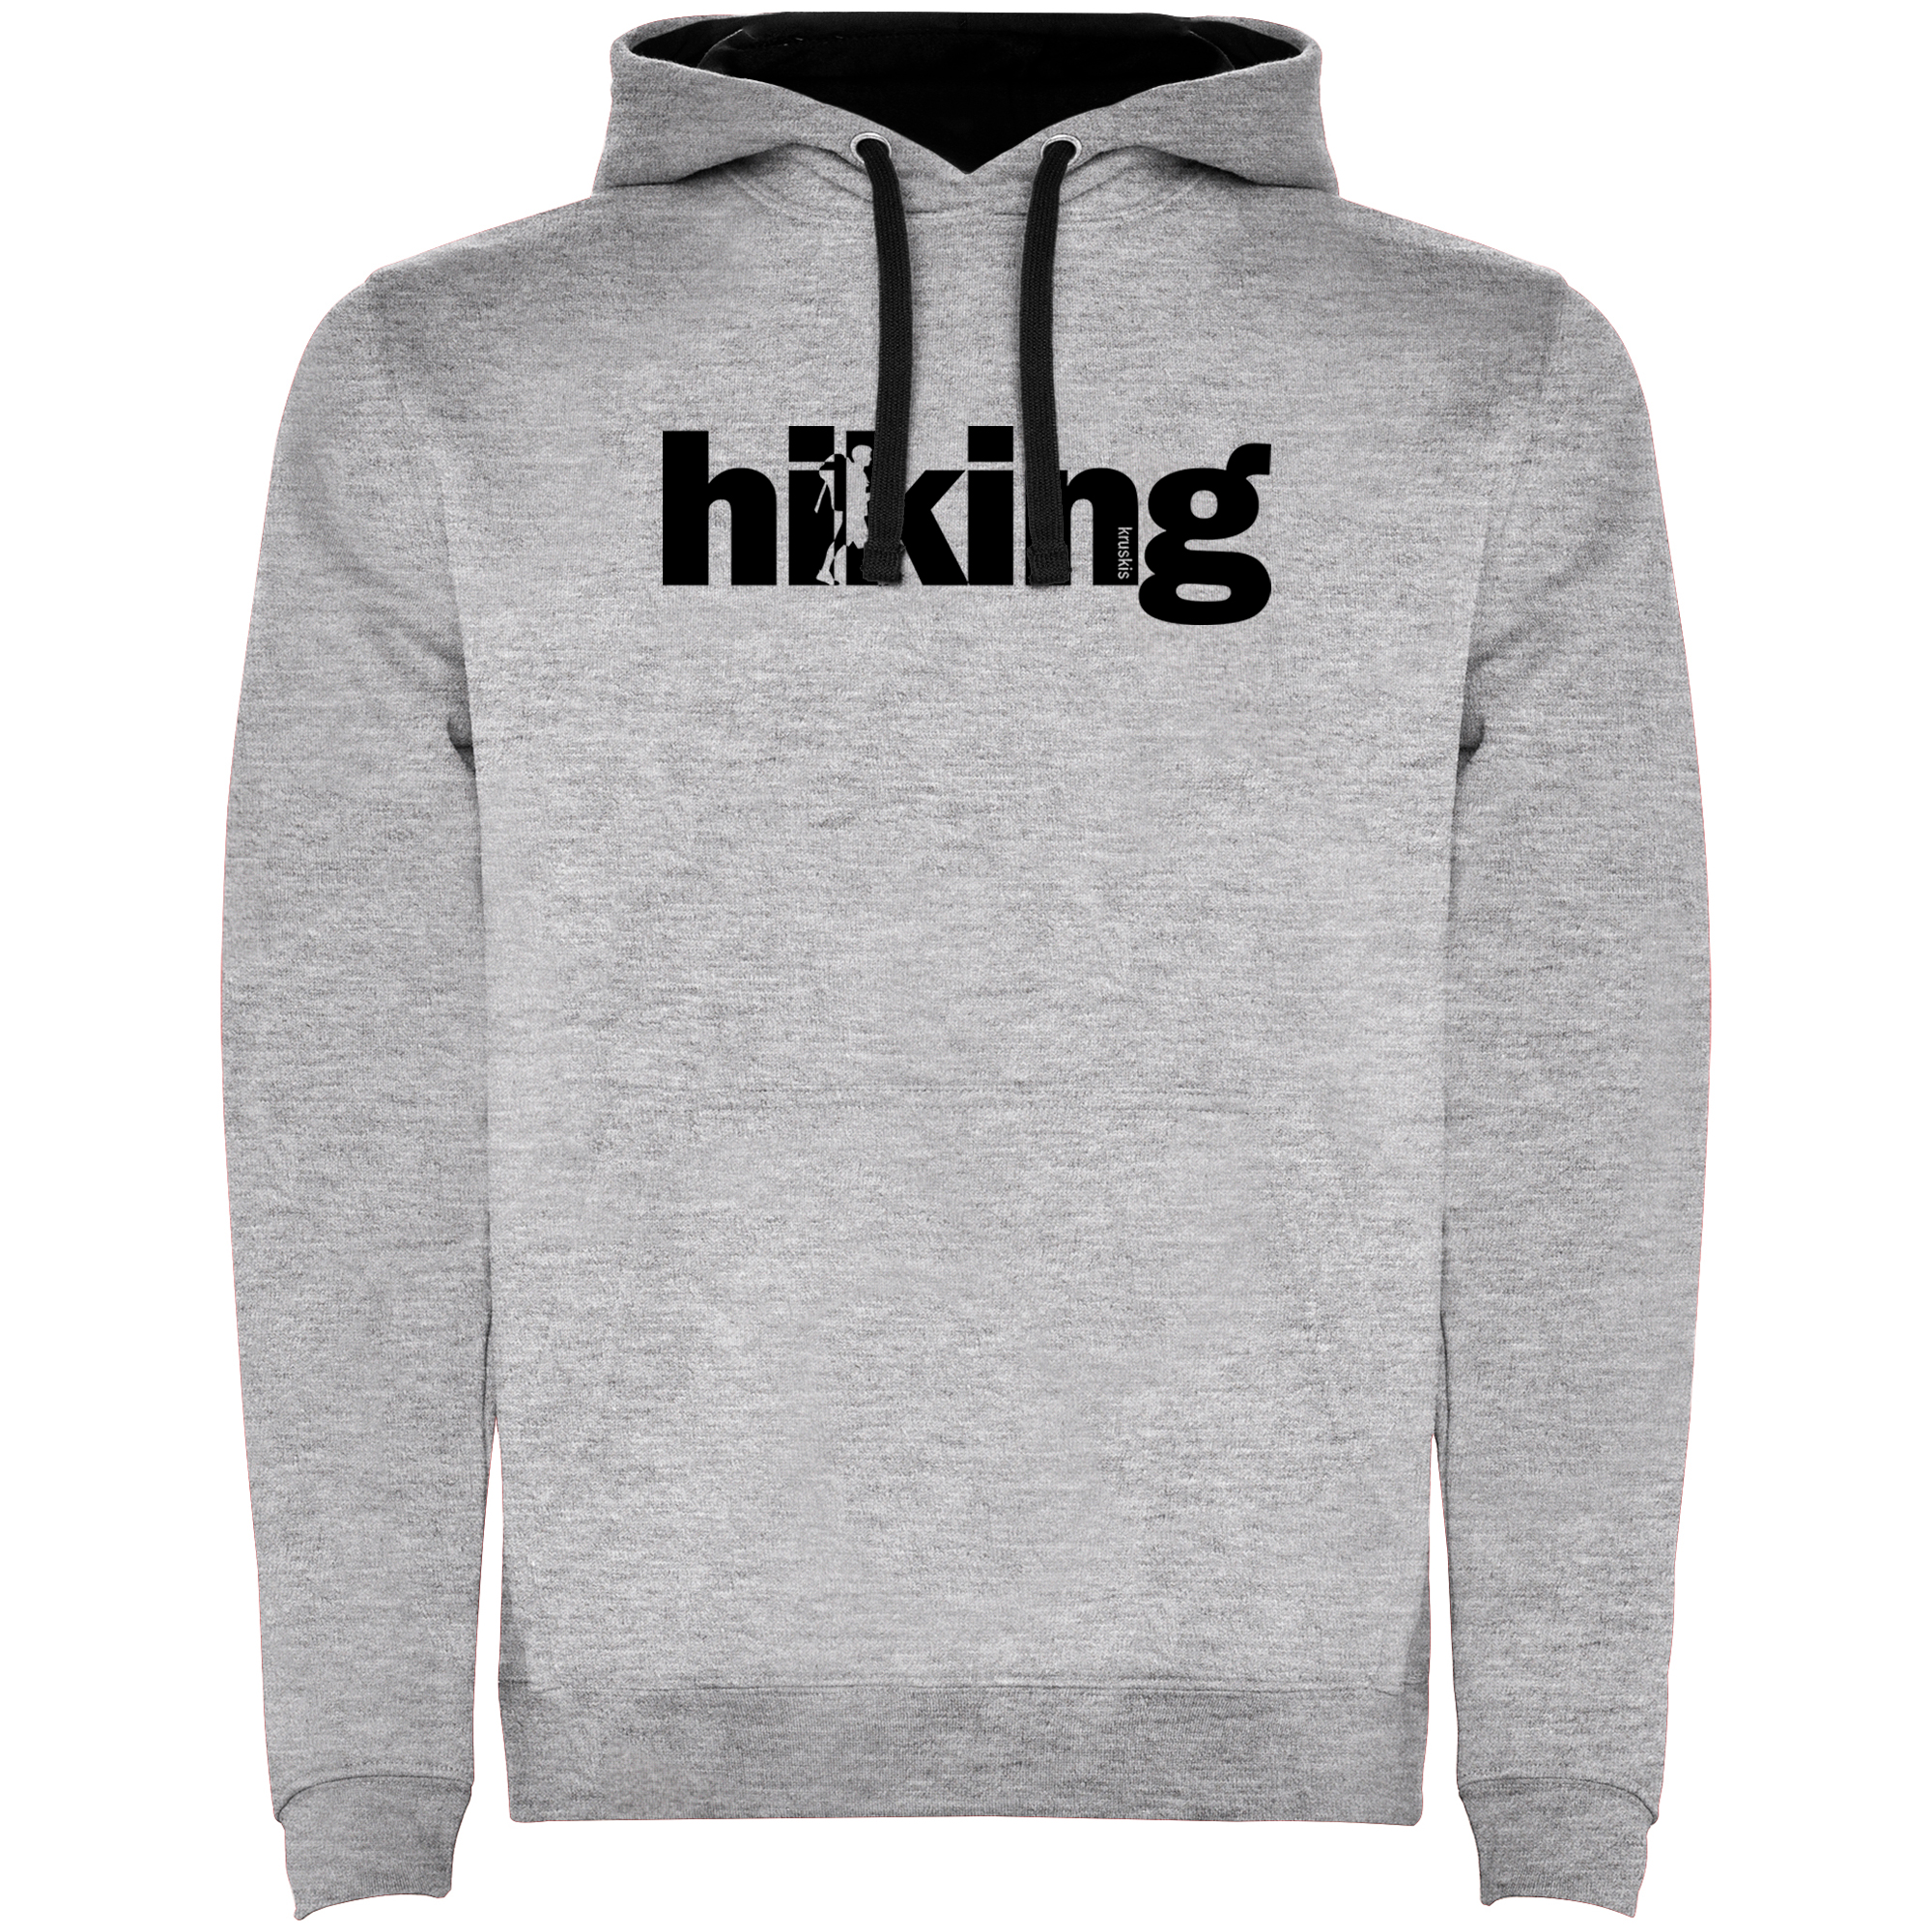 Hoodie Mountaineering Word Hiking Unisex